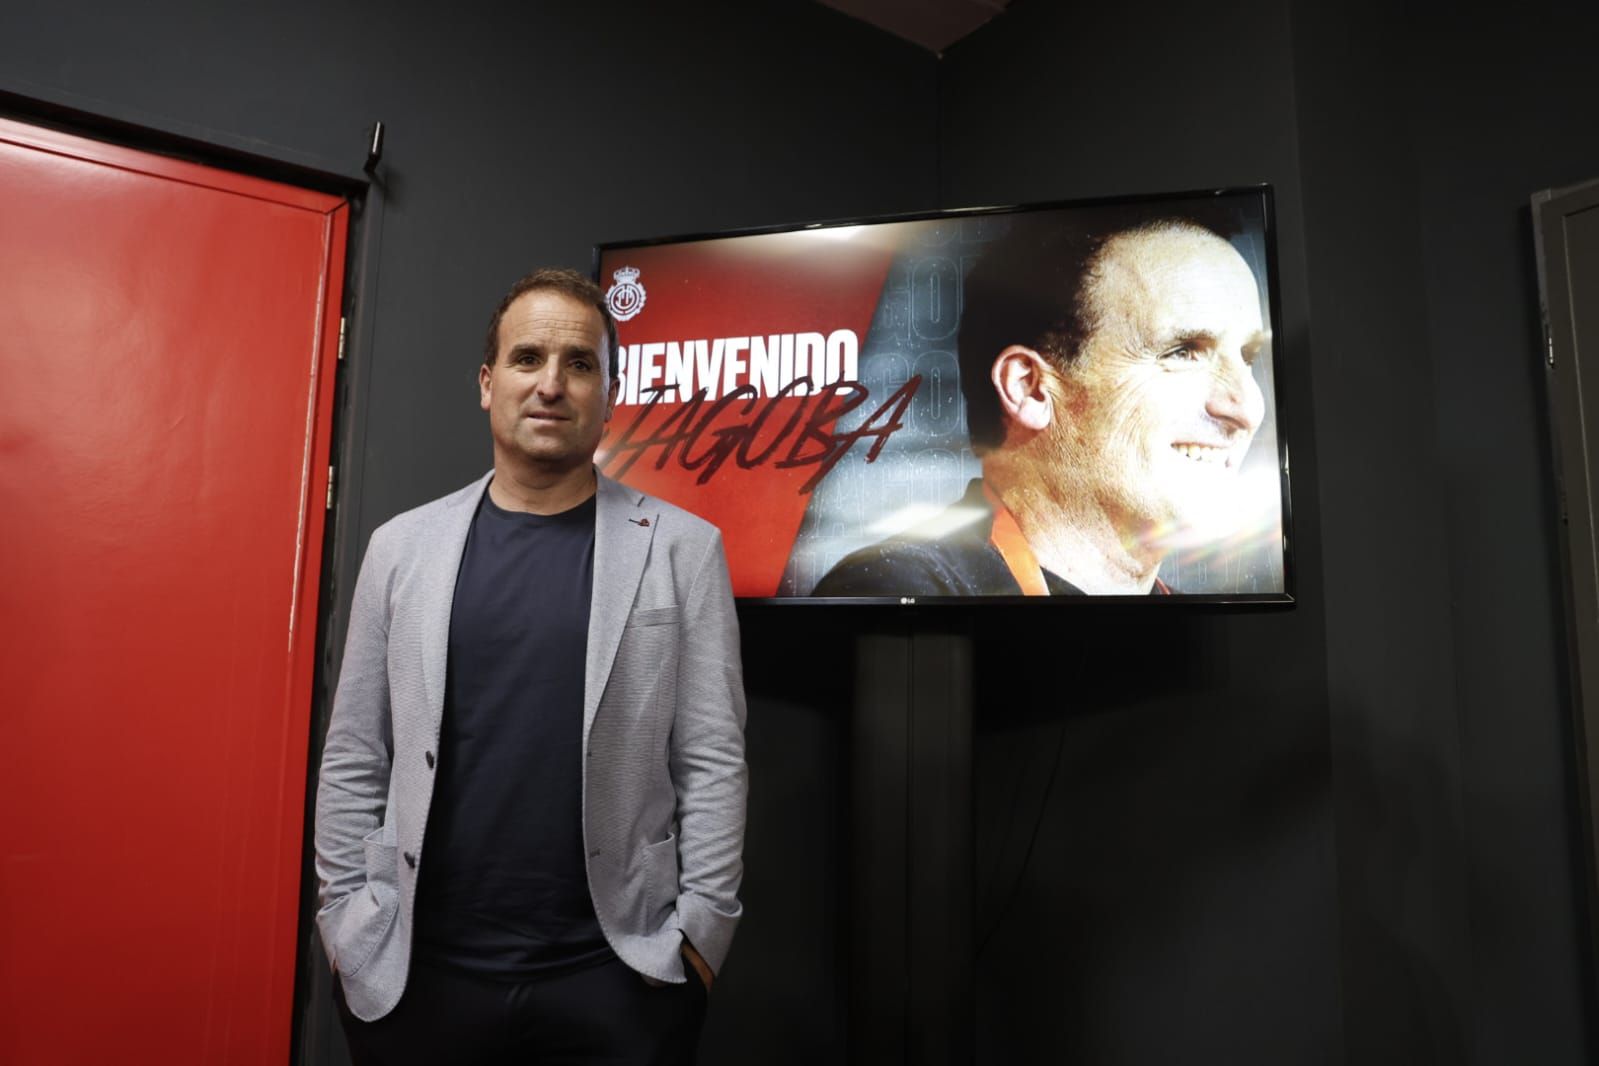 Las mejores imágenes de la presentación oficial de Jagoba Arrasate como entrenador del RCD Mallorca